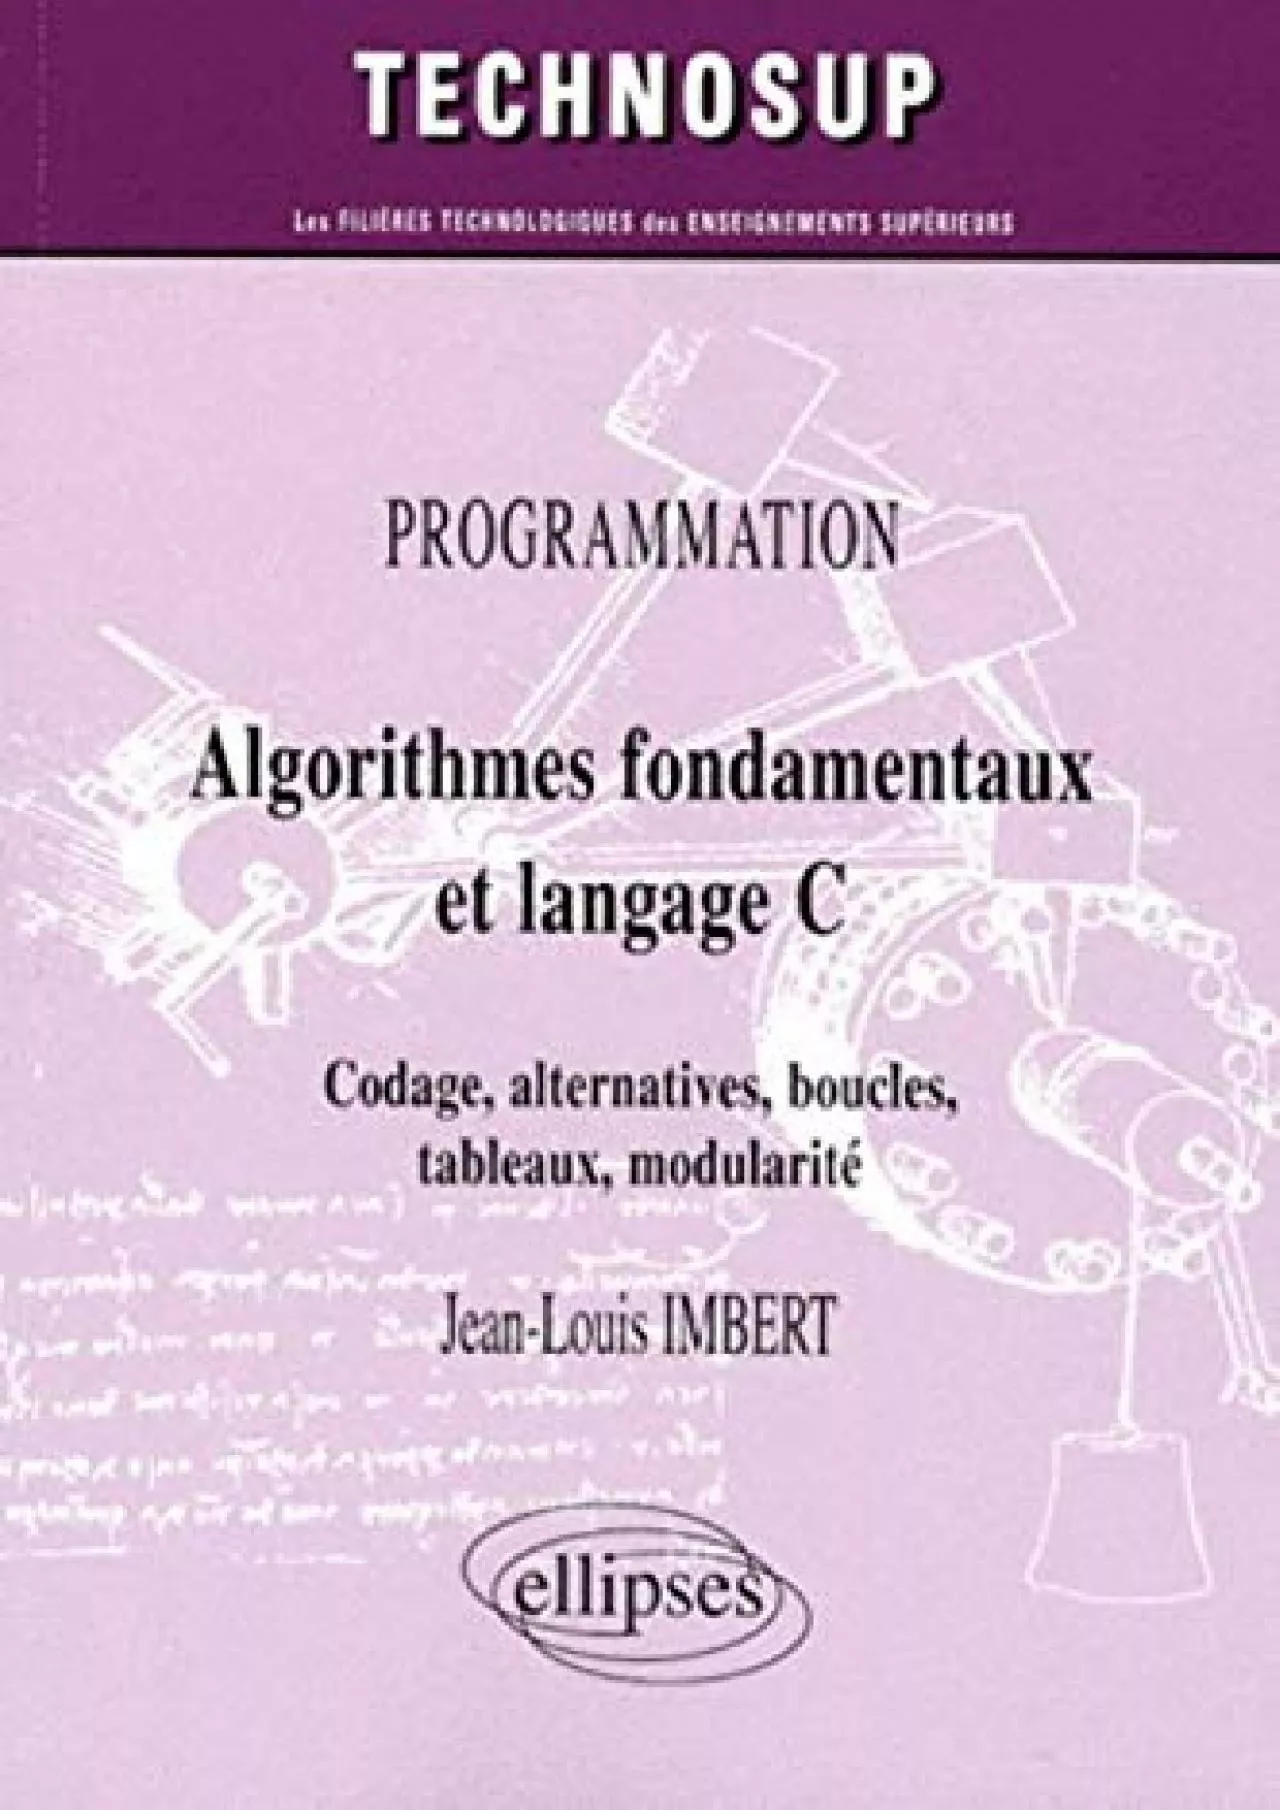 [READING BOOK]-Algorithmes fondamentaux et langage C (Technosup)